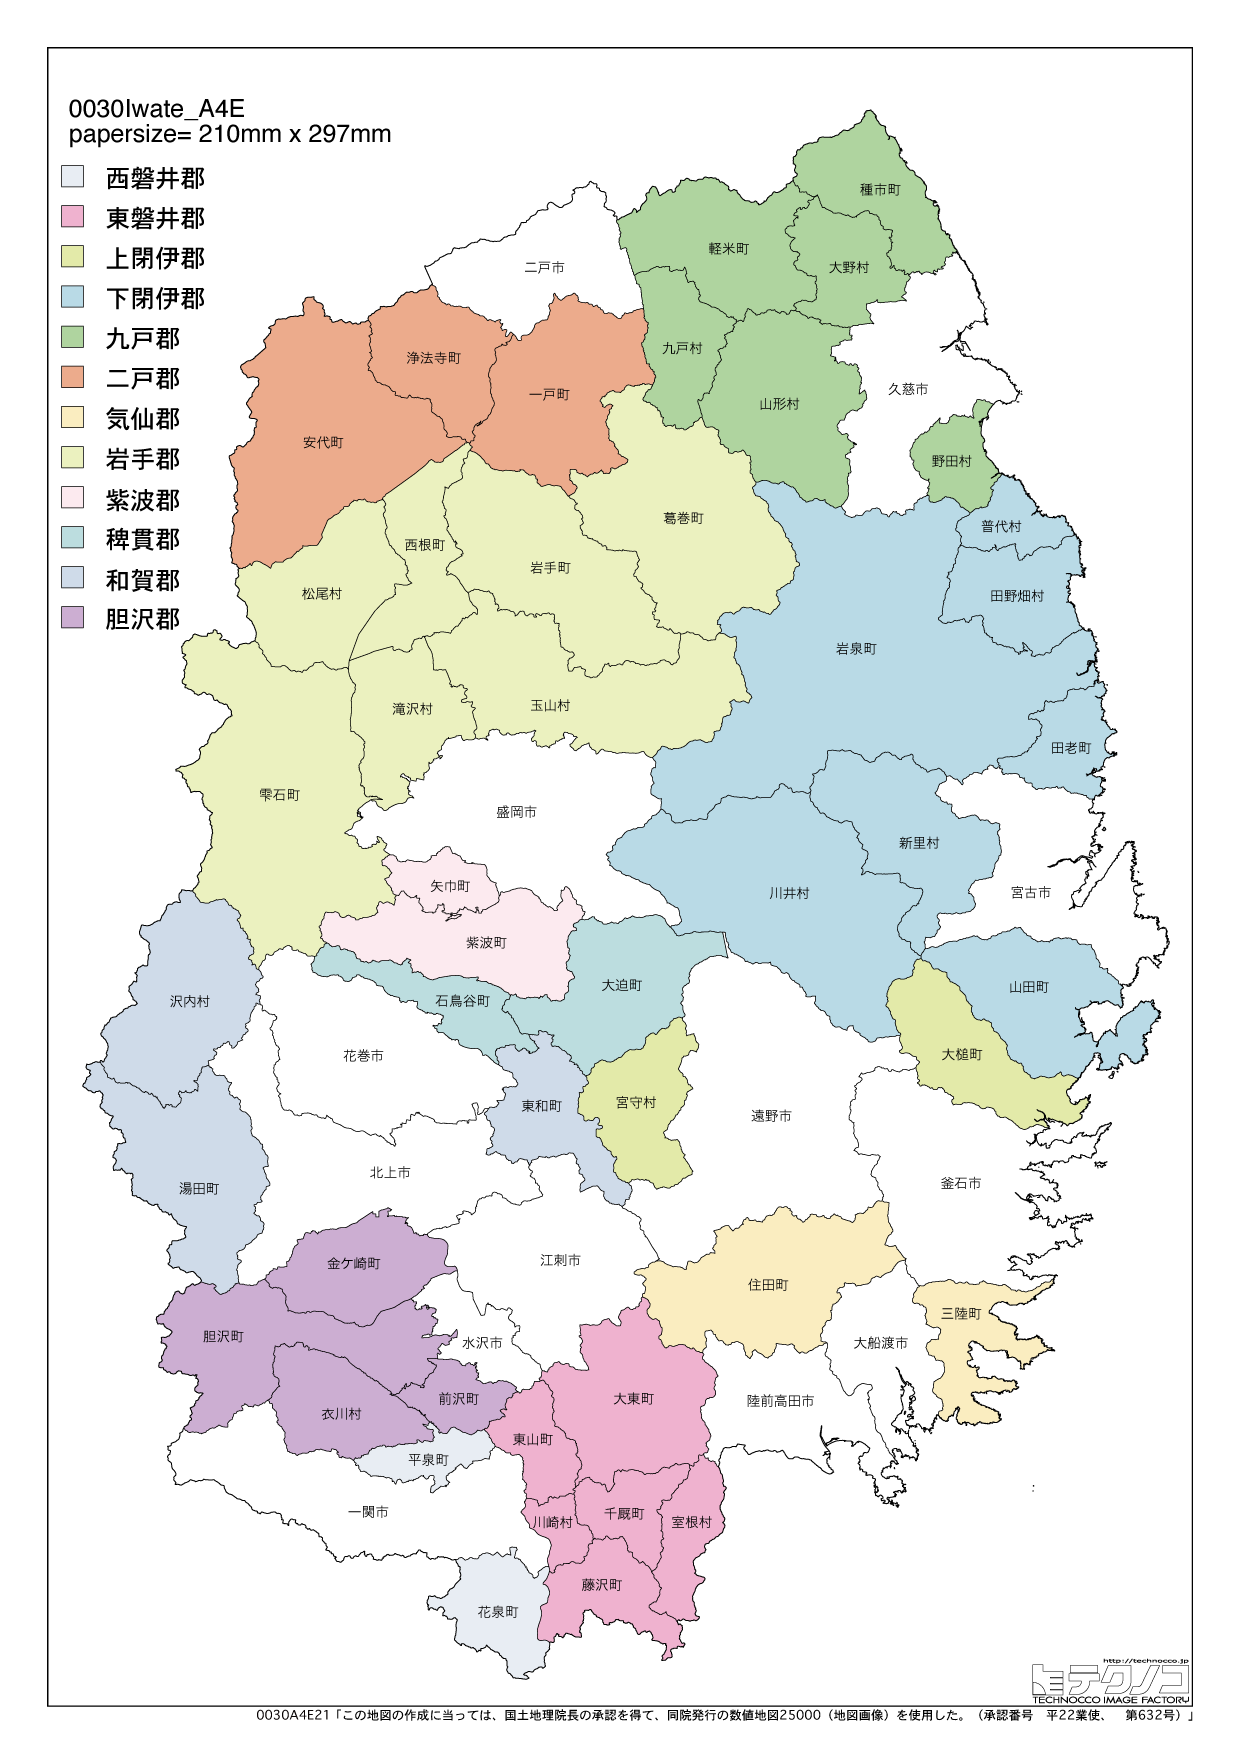 岩手県の白地図と市町村の合併情報